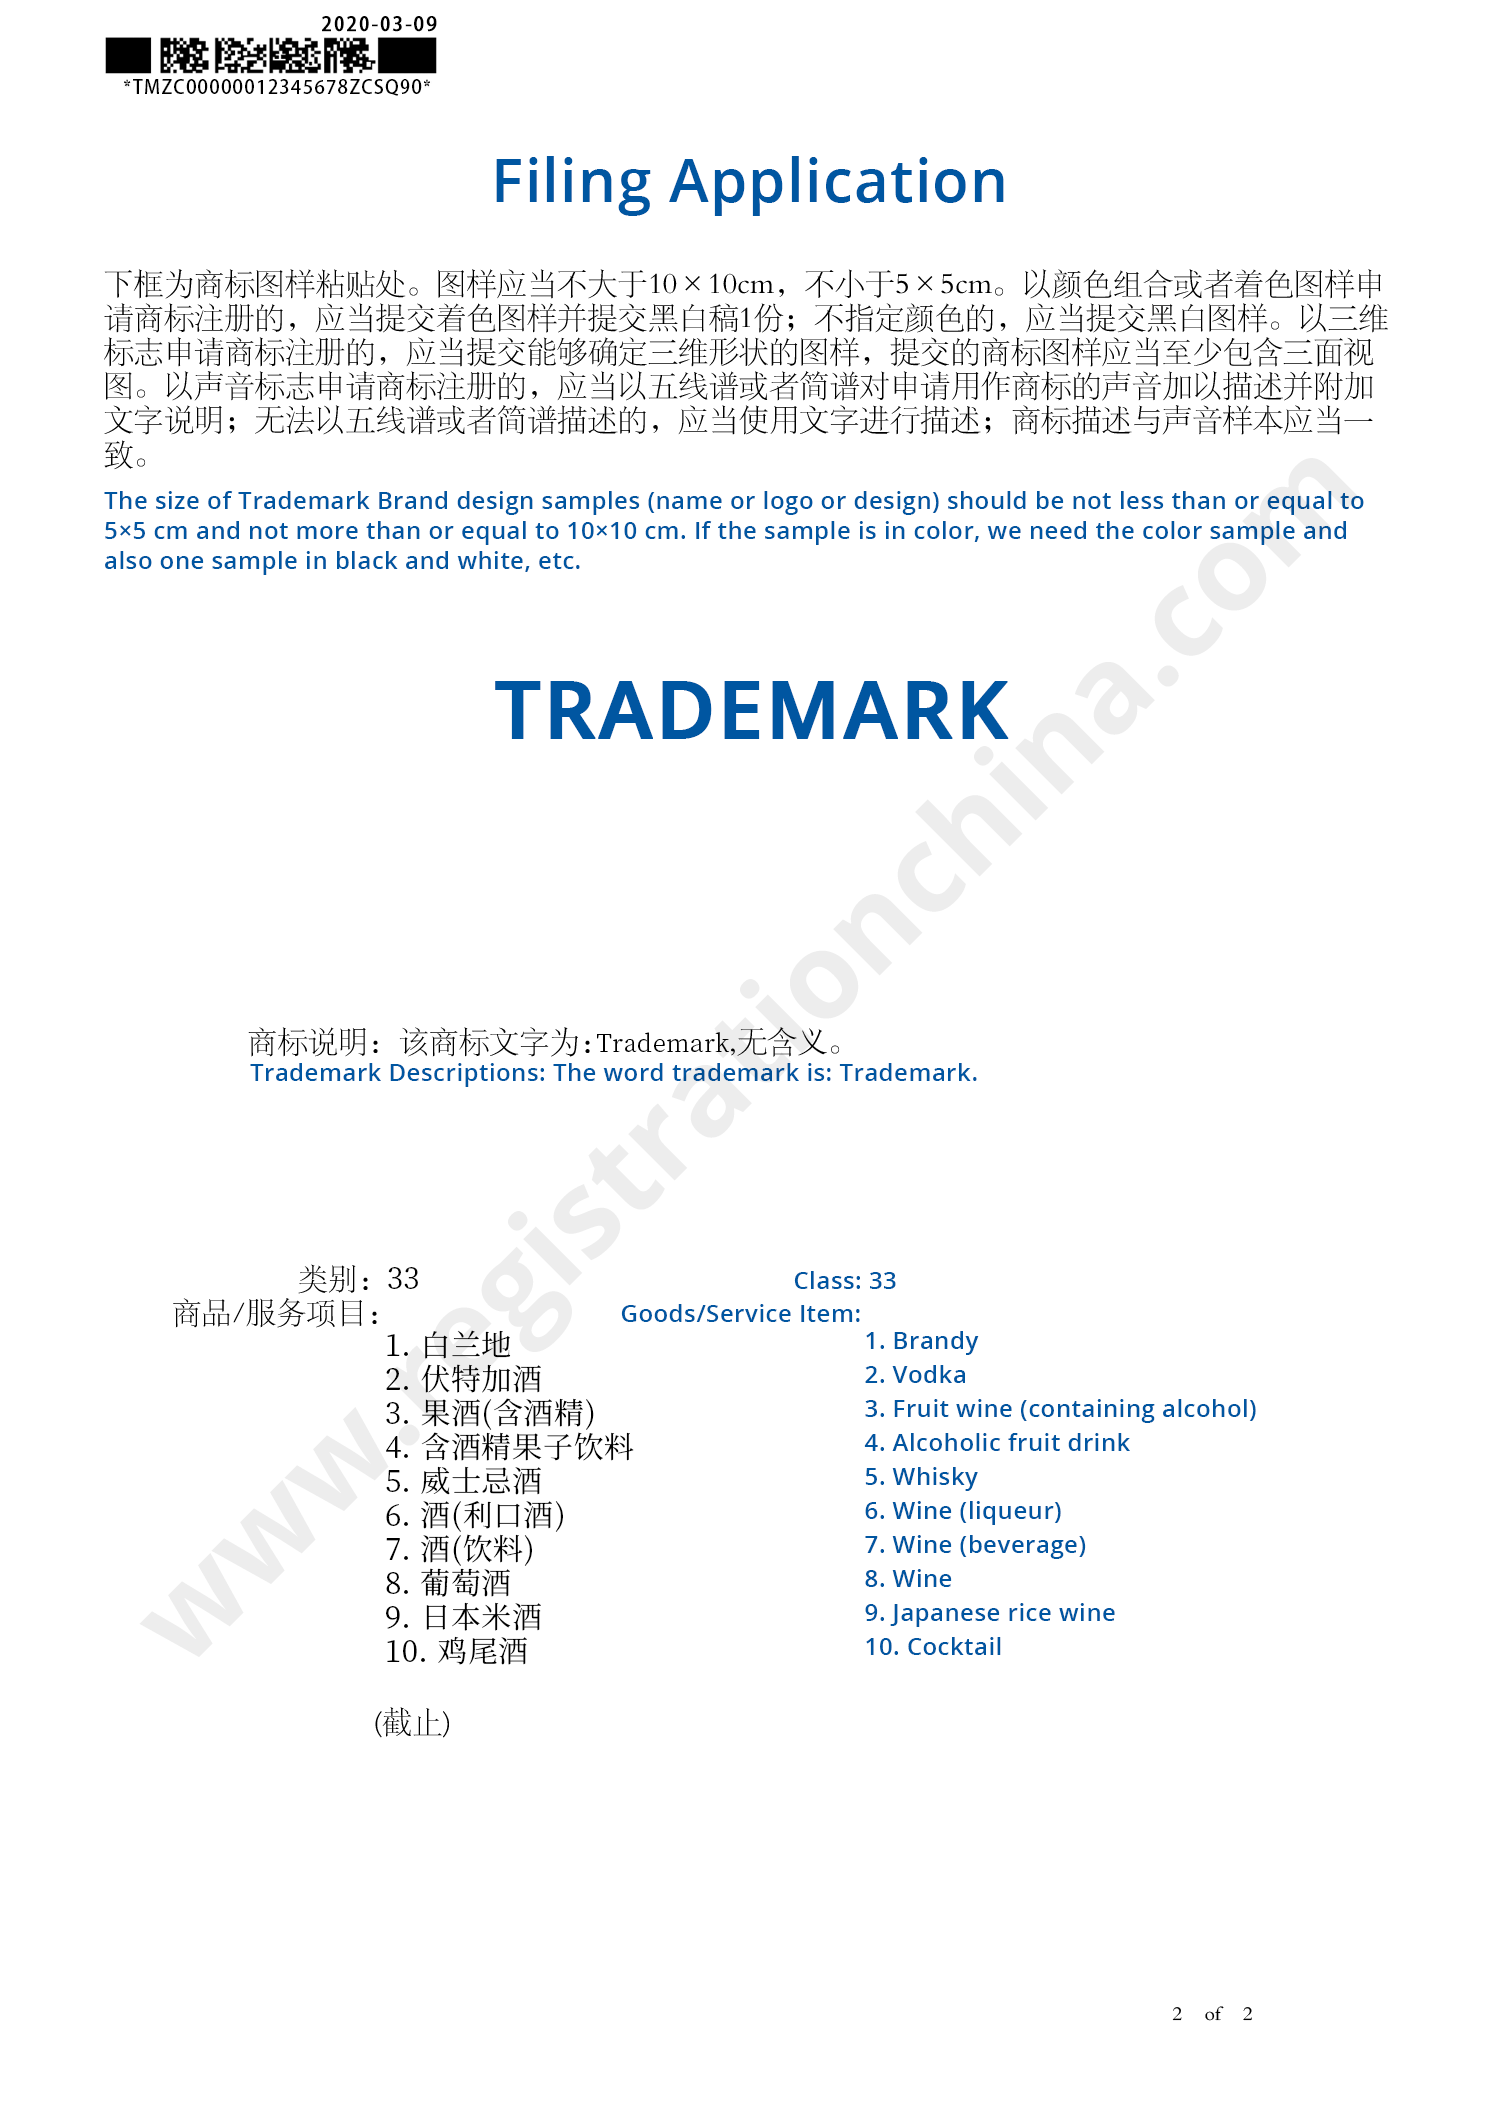 Trademark Filing Application 2